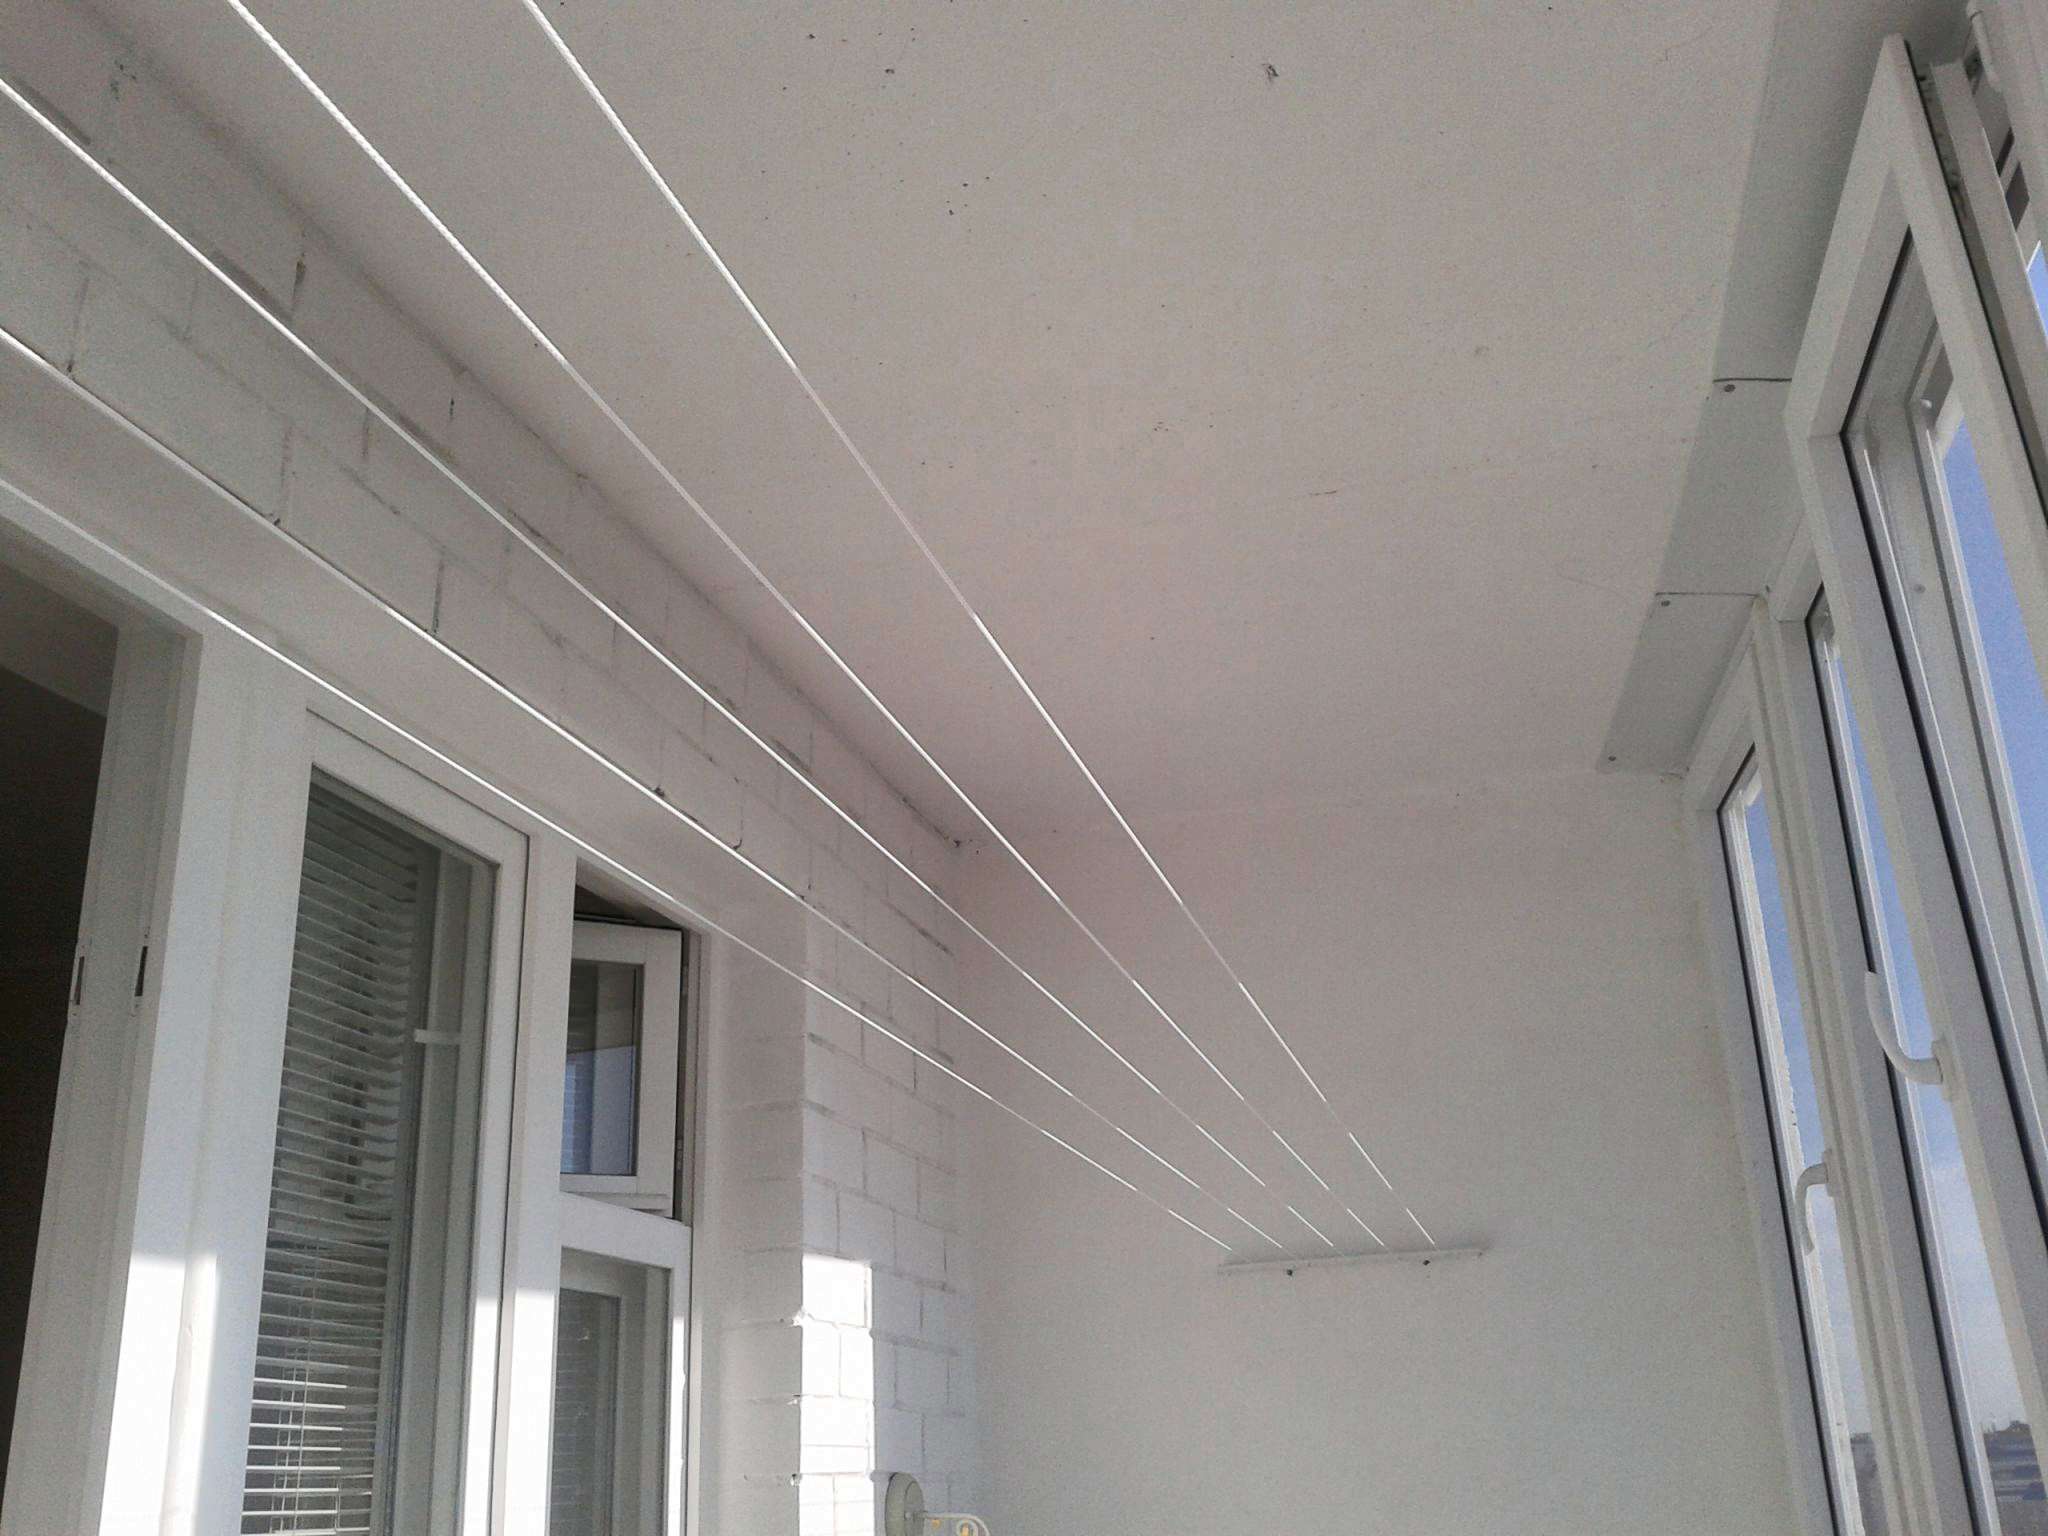 Плюсы и минусы 6 видов потолочных сушилок для белья на балкон